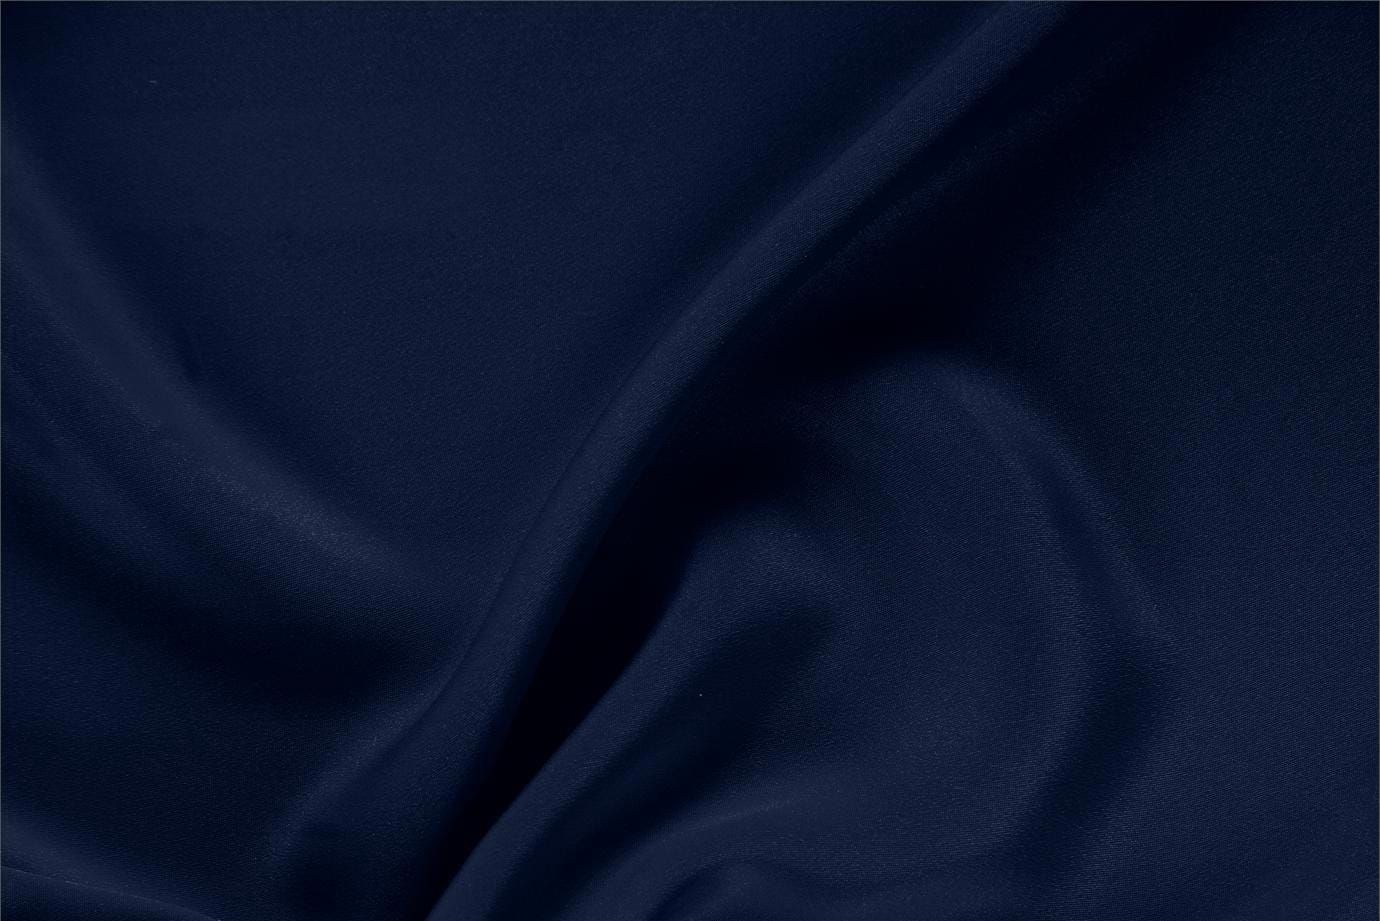 Tessuto Drap Blu Navy in Seta per abbigliamento